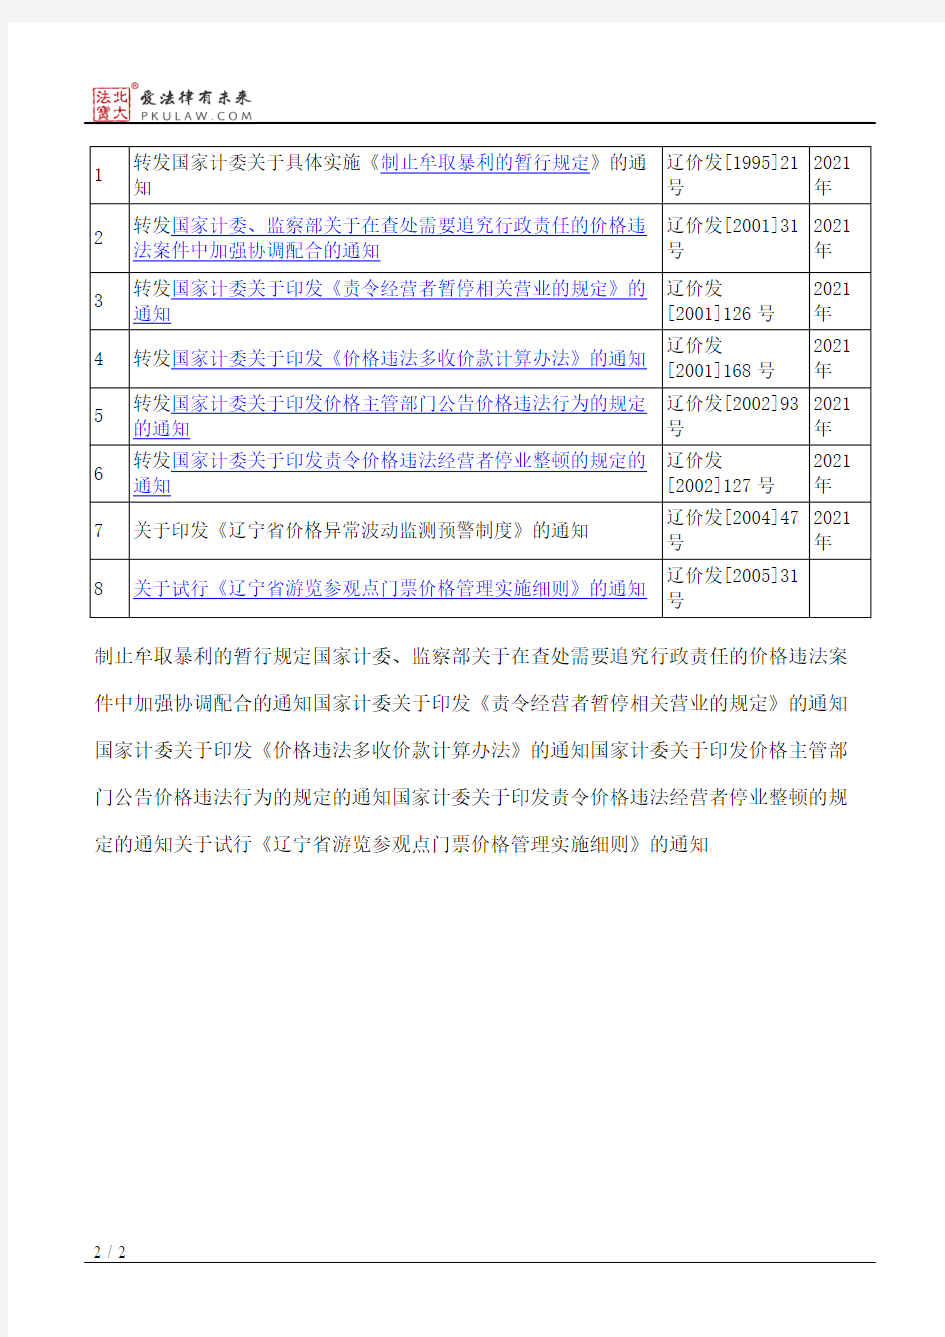 辽宁省物价局关于公布保留的规范性文件目录的通知